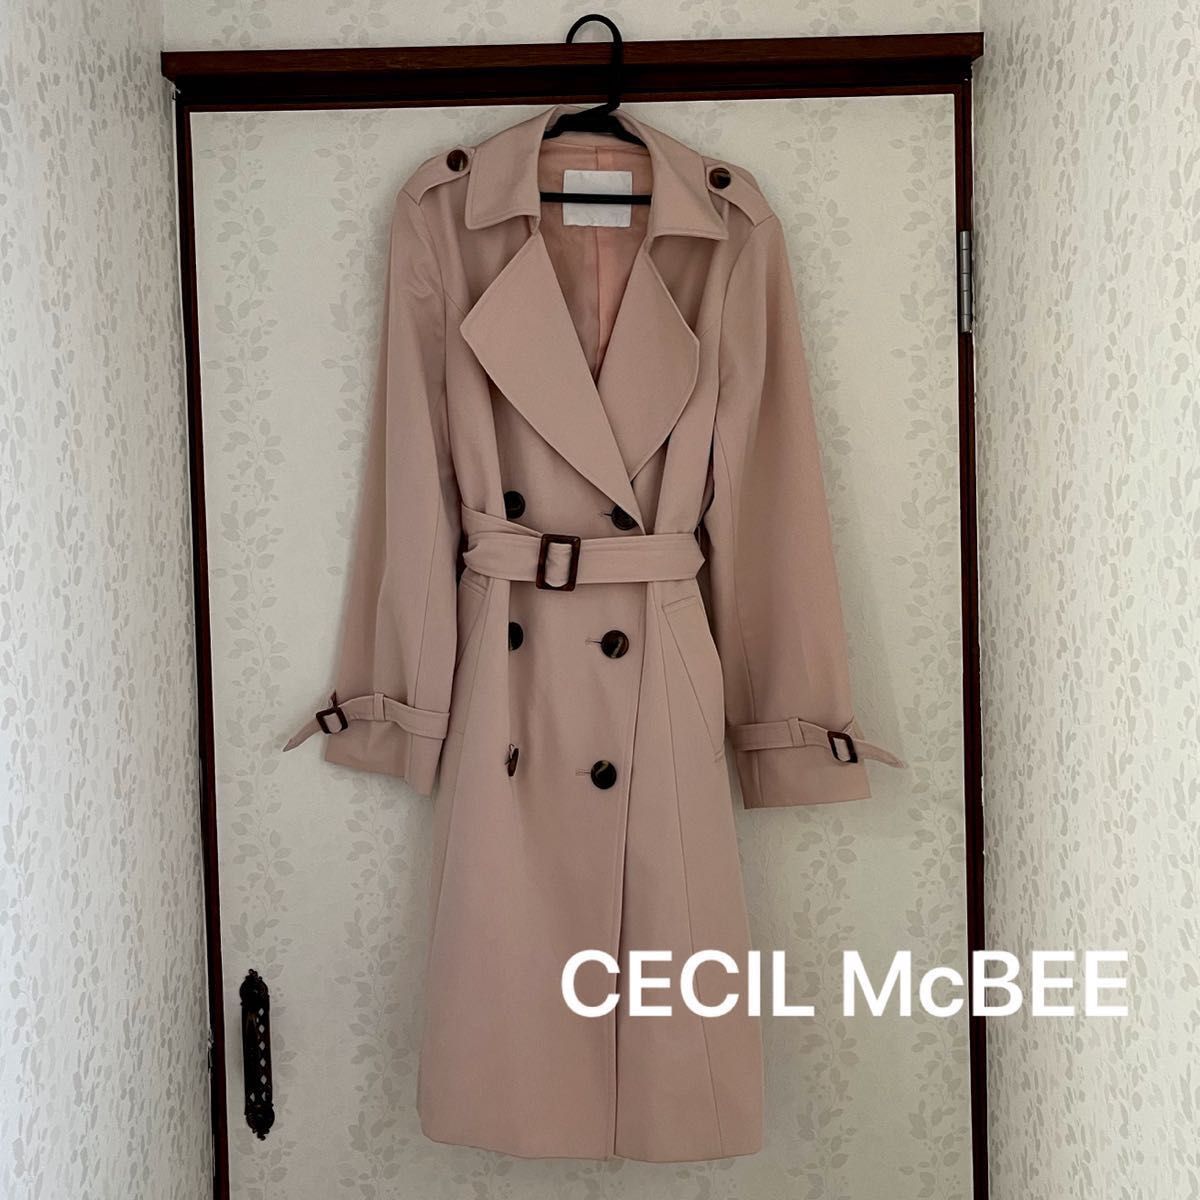 CECIl McBEE トレンチコート スプリングコート ピンク Mサイズ 美品